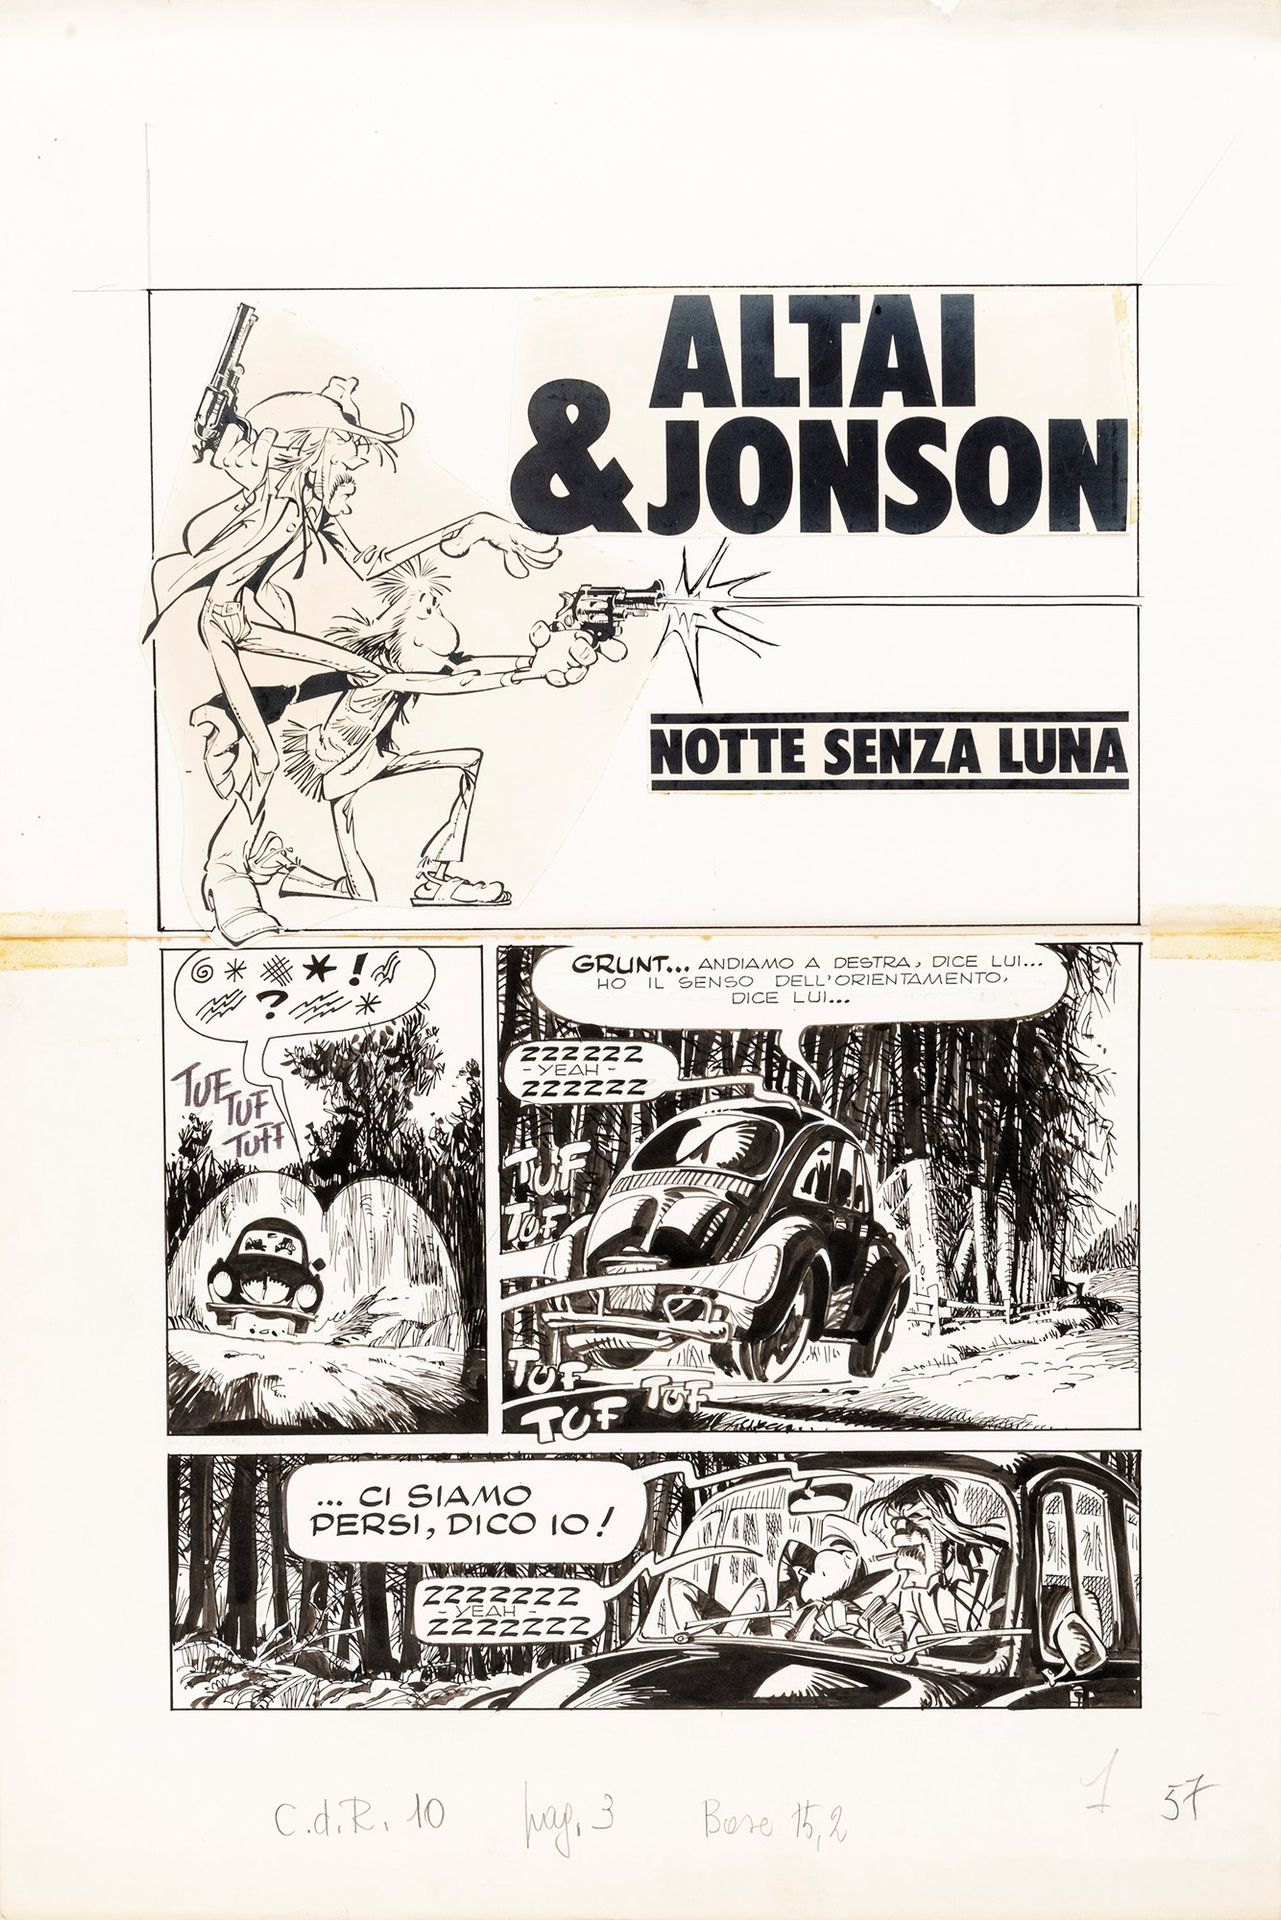 Giorgio Cavazzano Altai & Jonson - Notte senza luna, 1976

pencil and ink on thi&hellip;